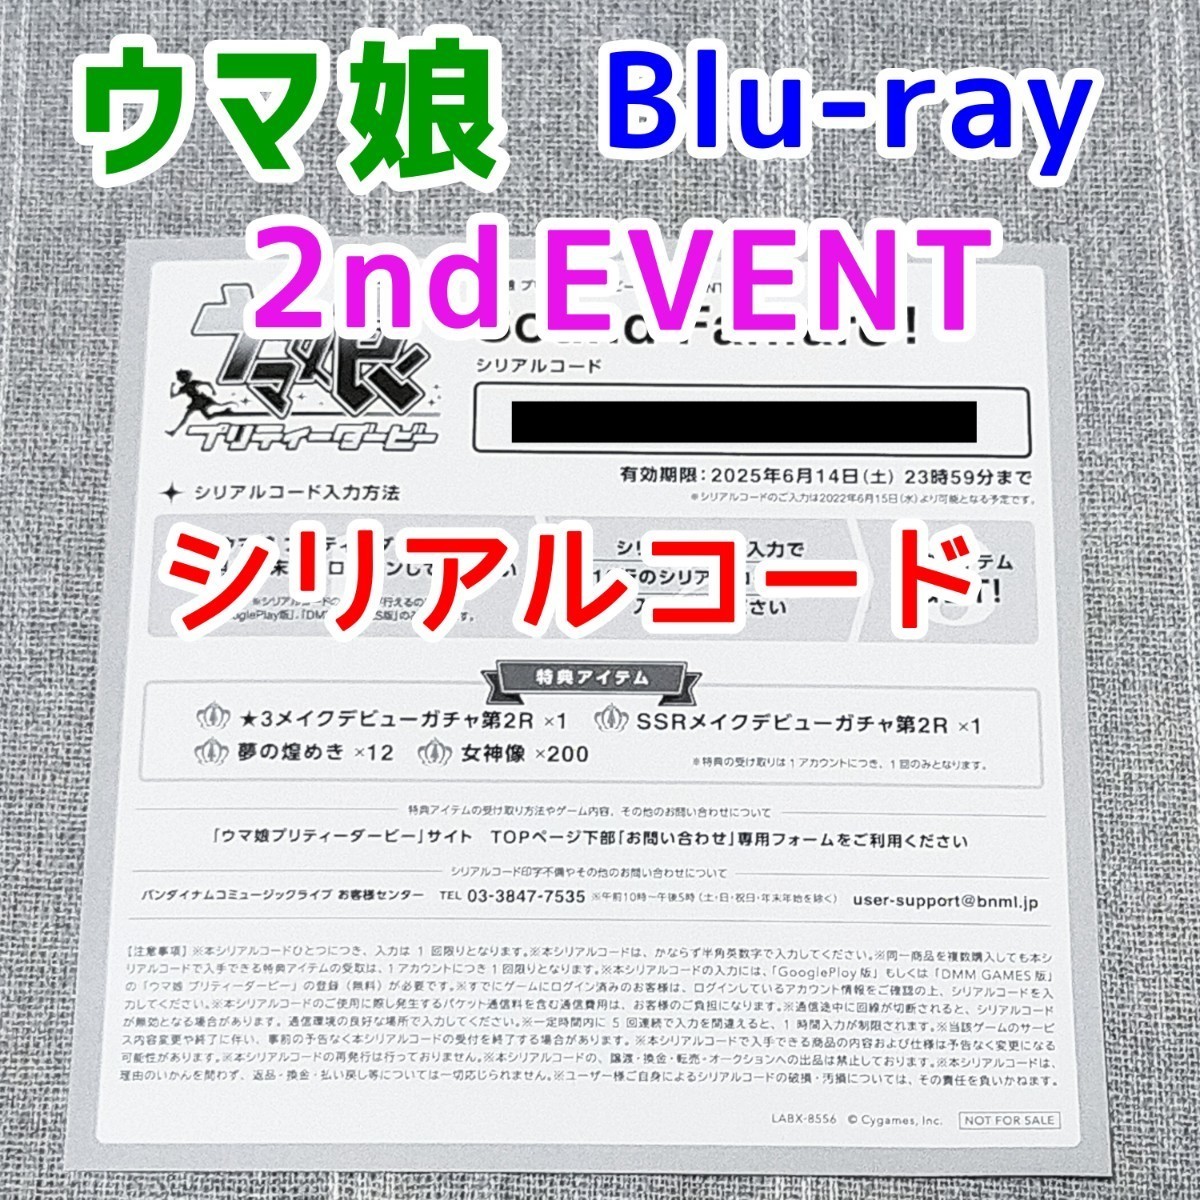 3枚 シリアルコード ライブBlu ray特典 ウマ娘 2nd 3rd 4th EVENT